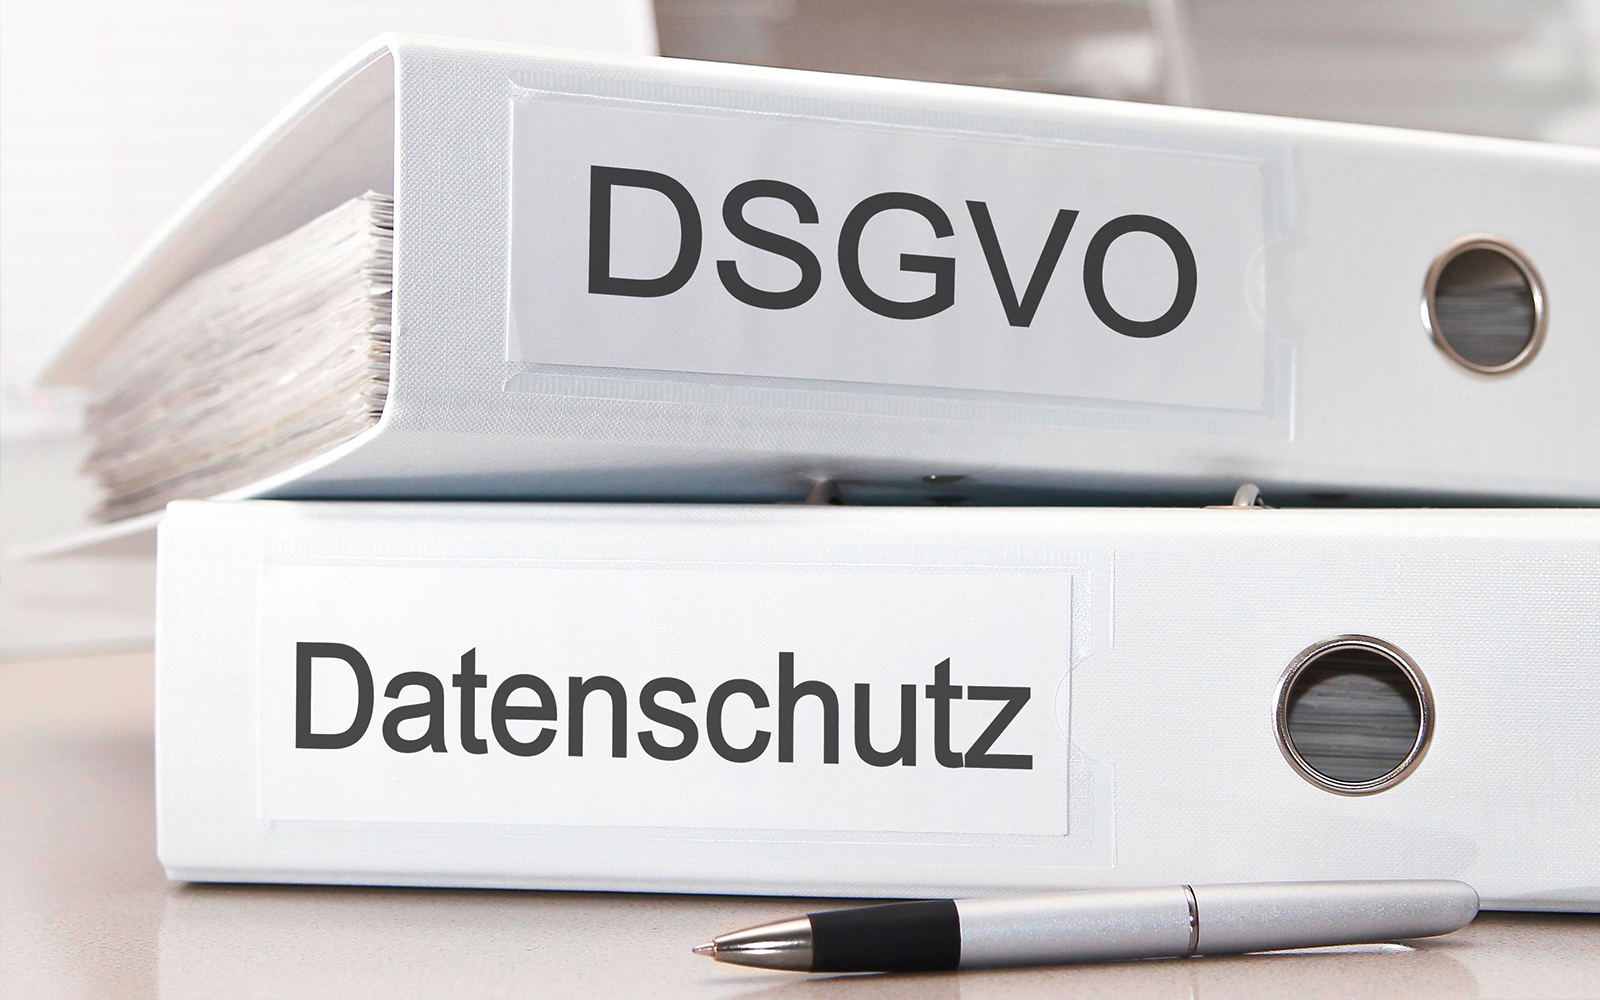 Zwei Ordner mit den Wörtern "DSGVO" und "Datenschutz" auf den Ordnerrücken